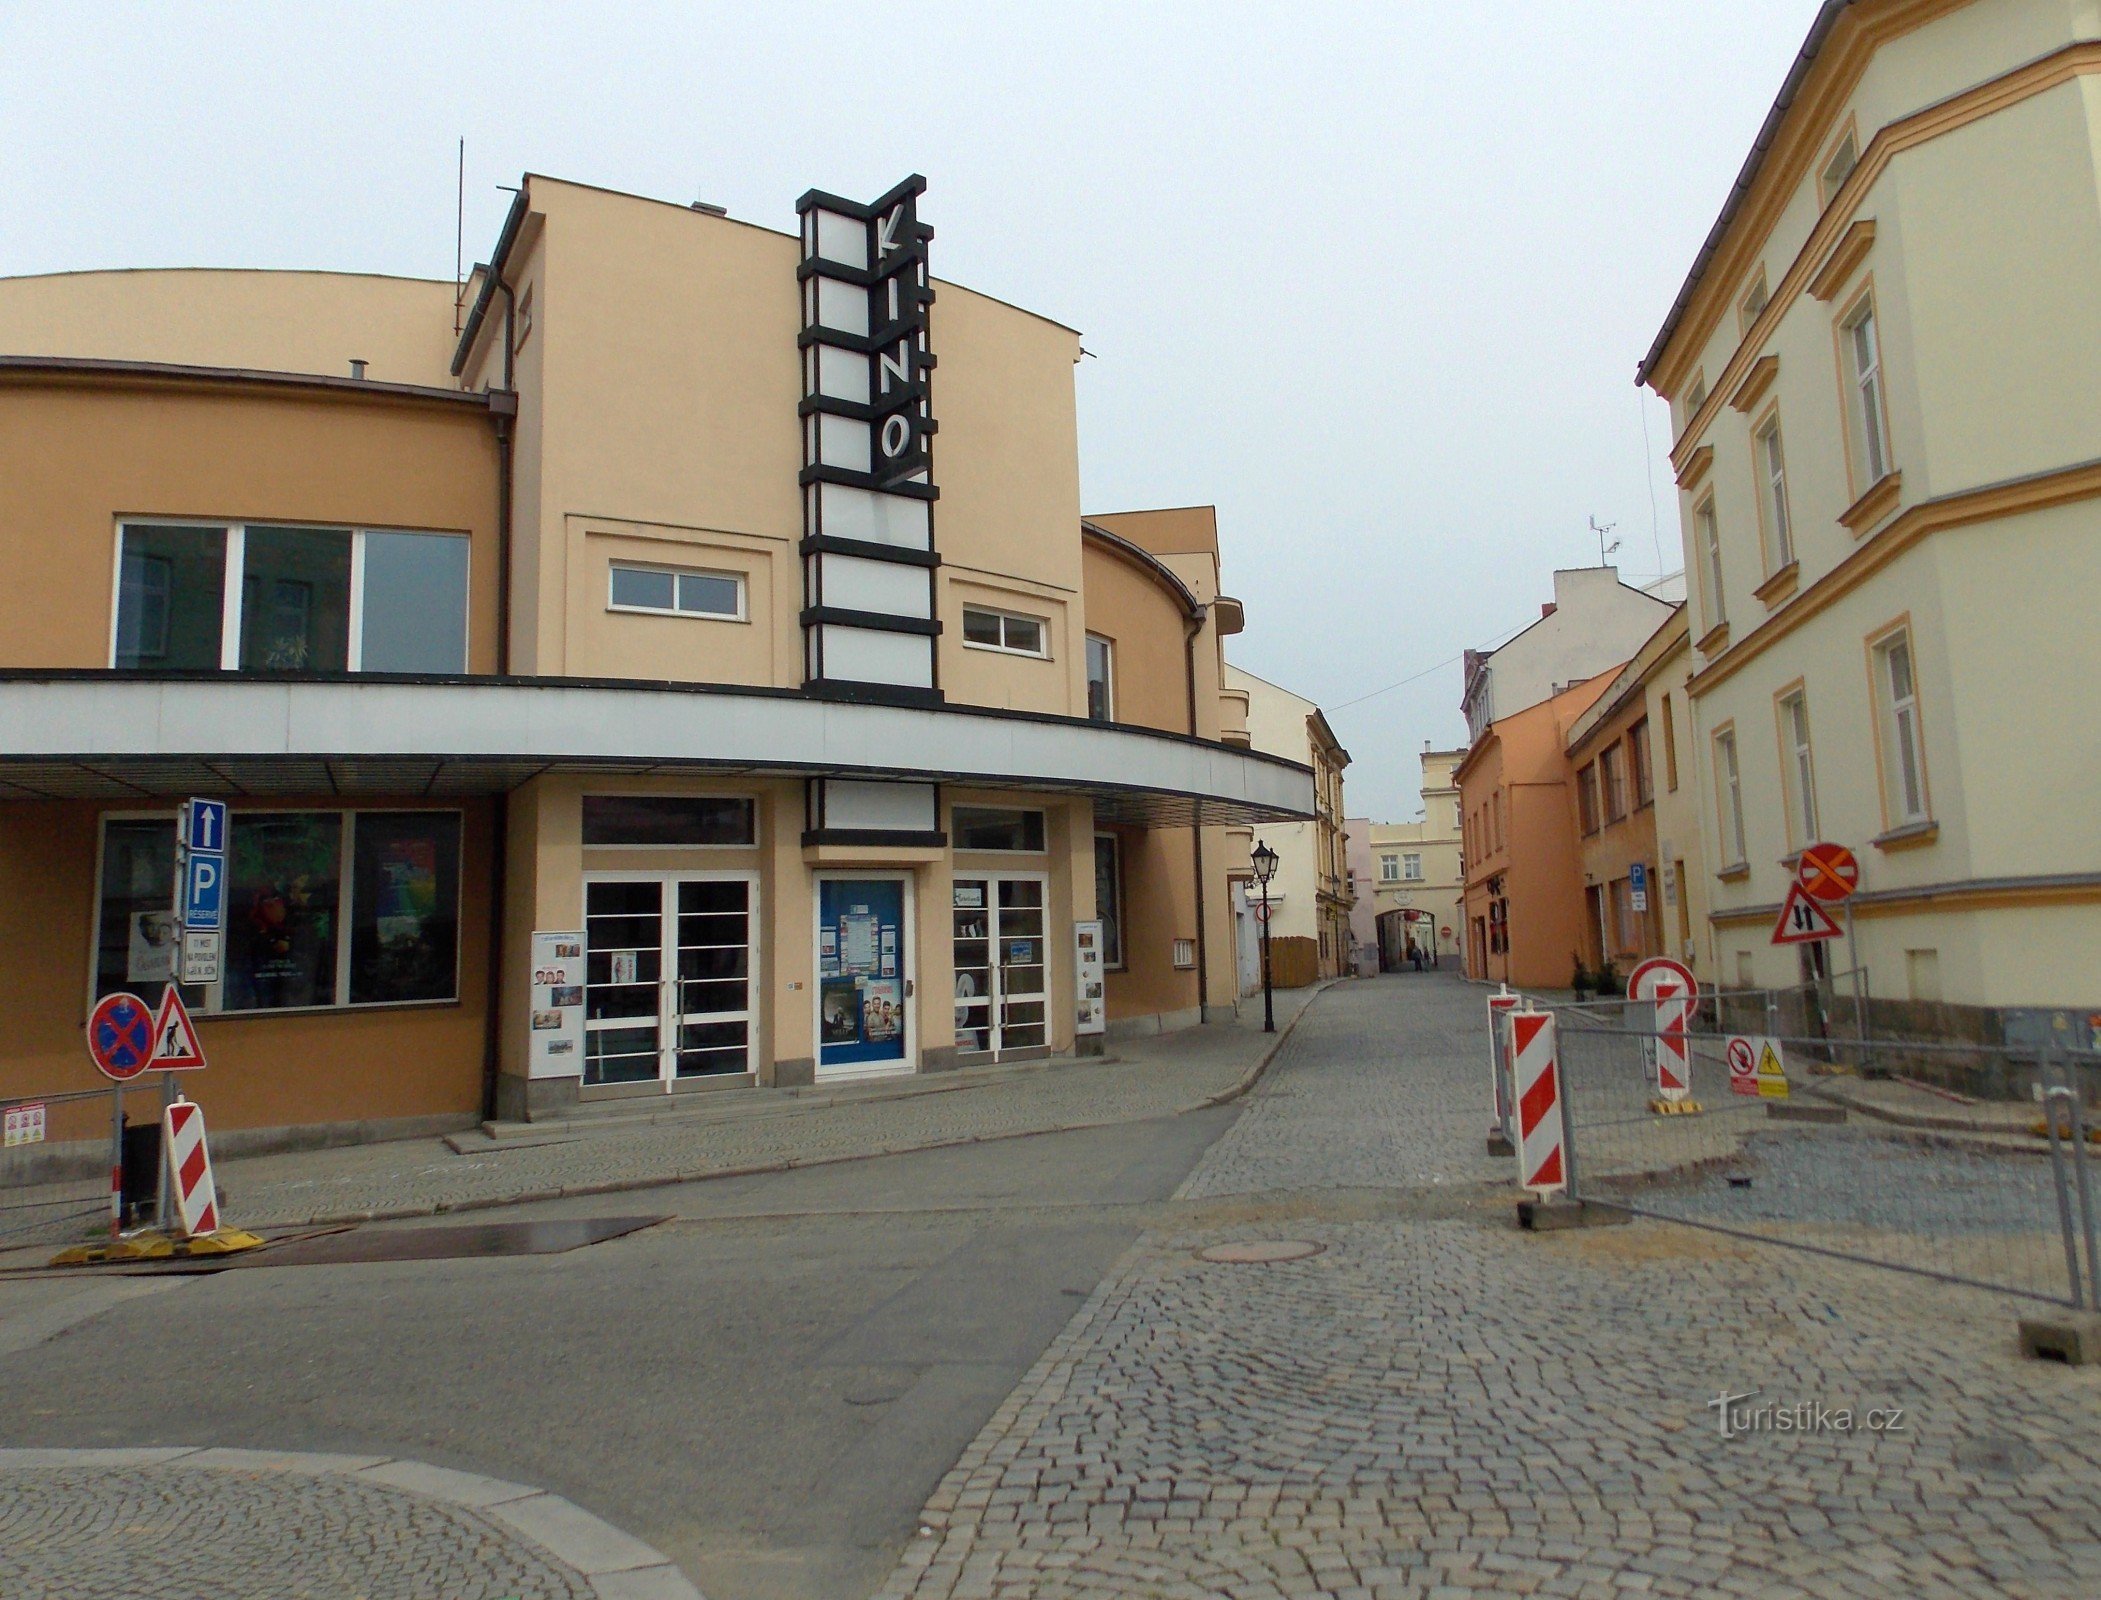 Kino Květen in Nové Jičín